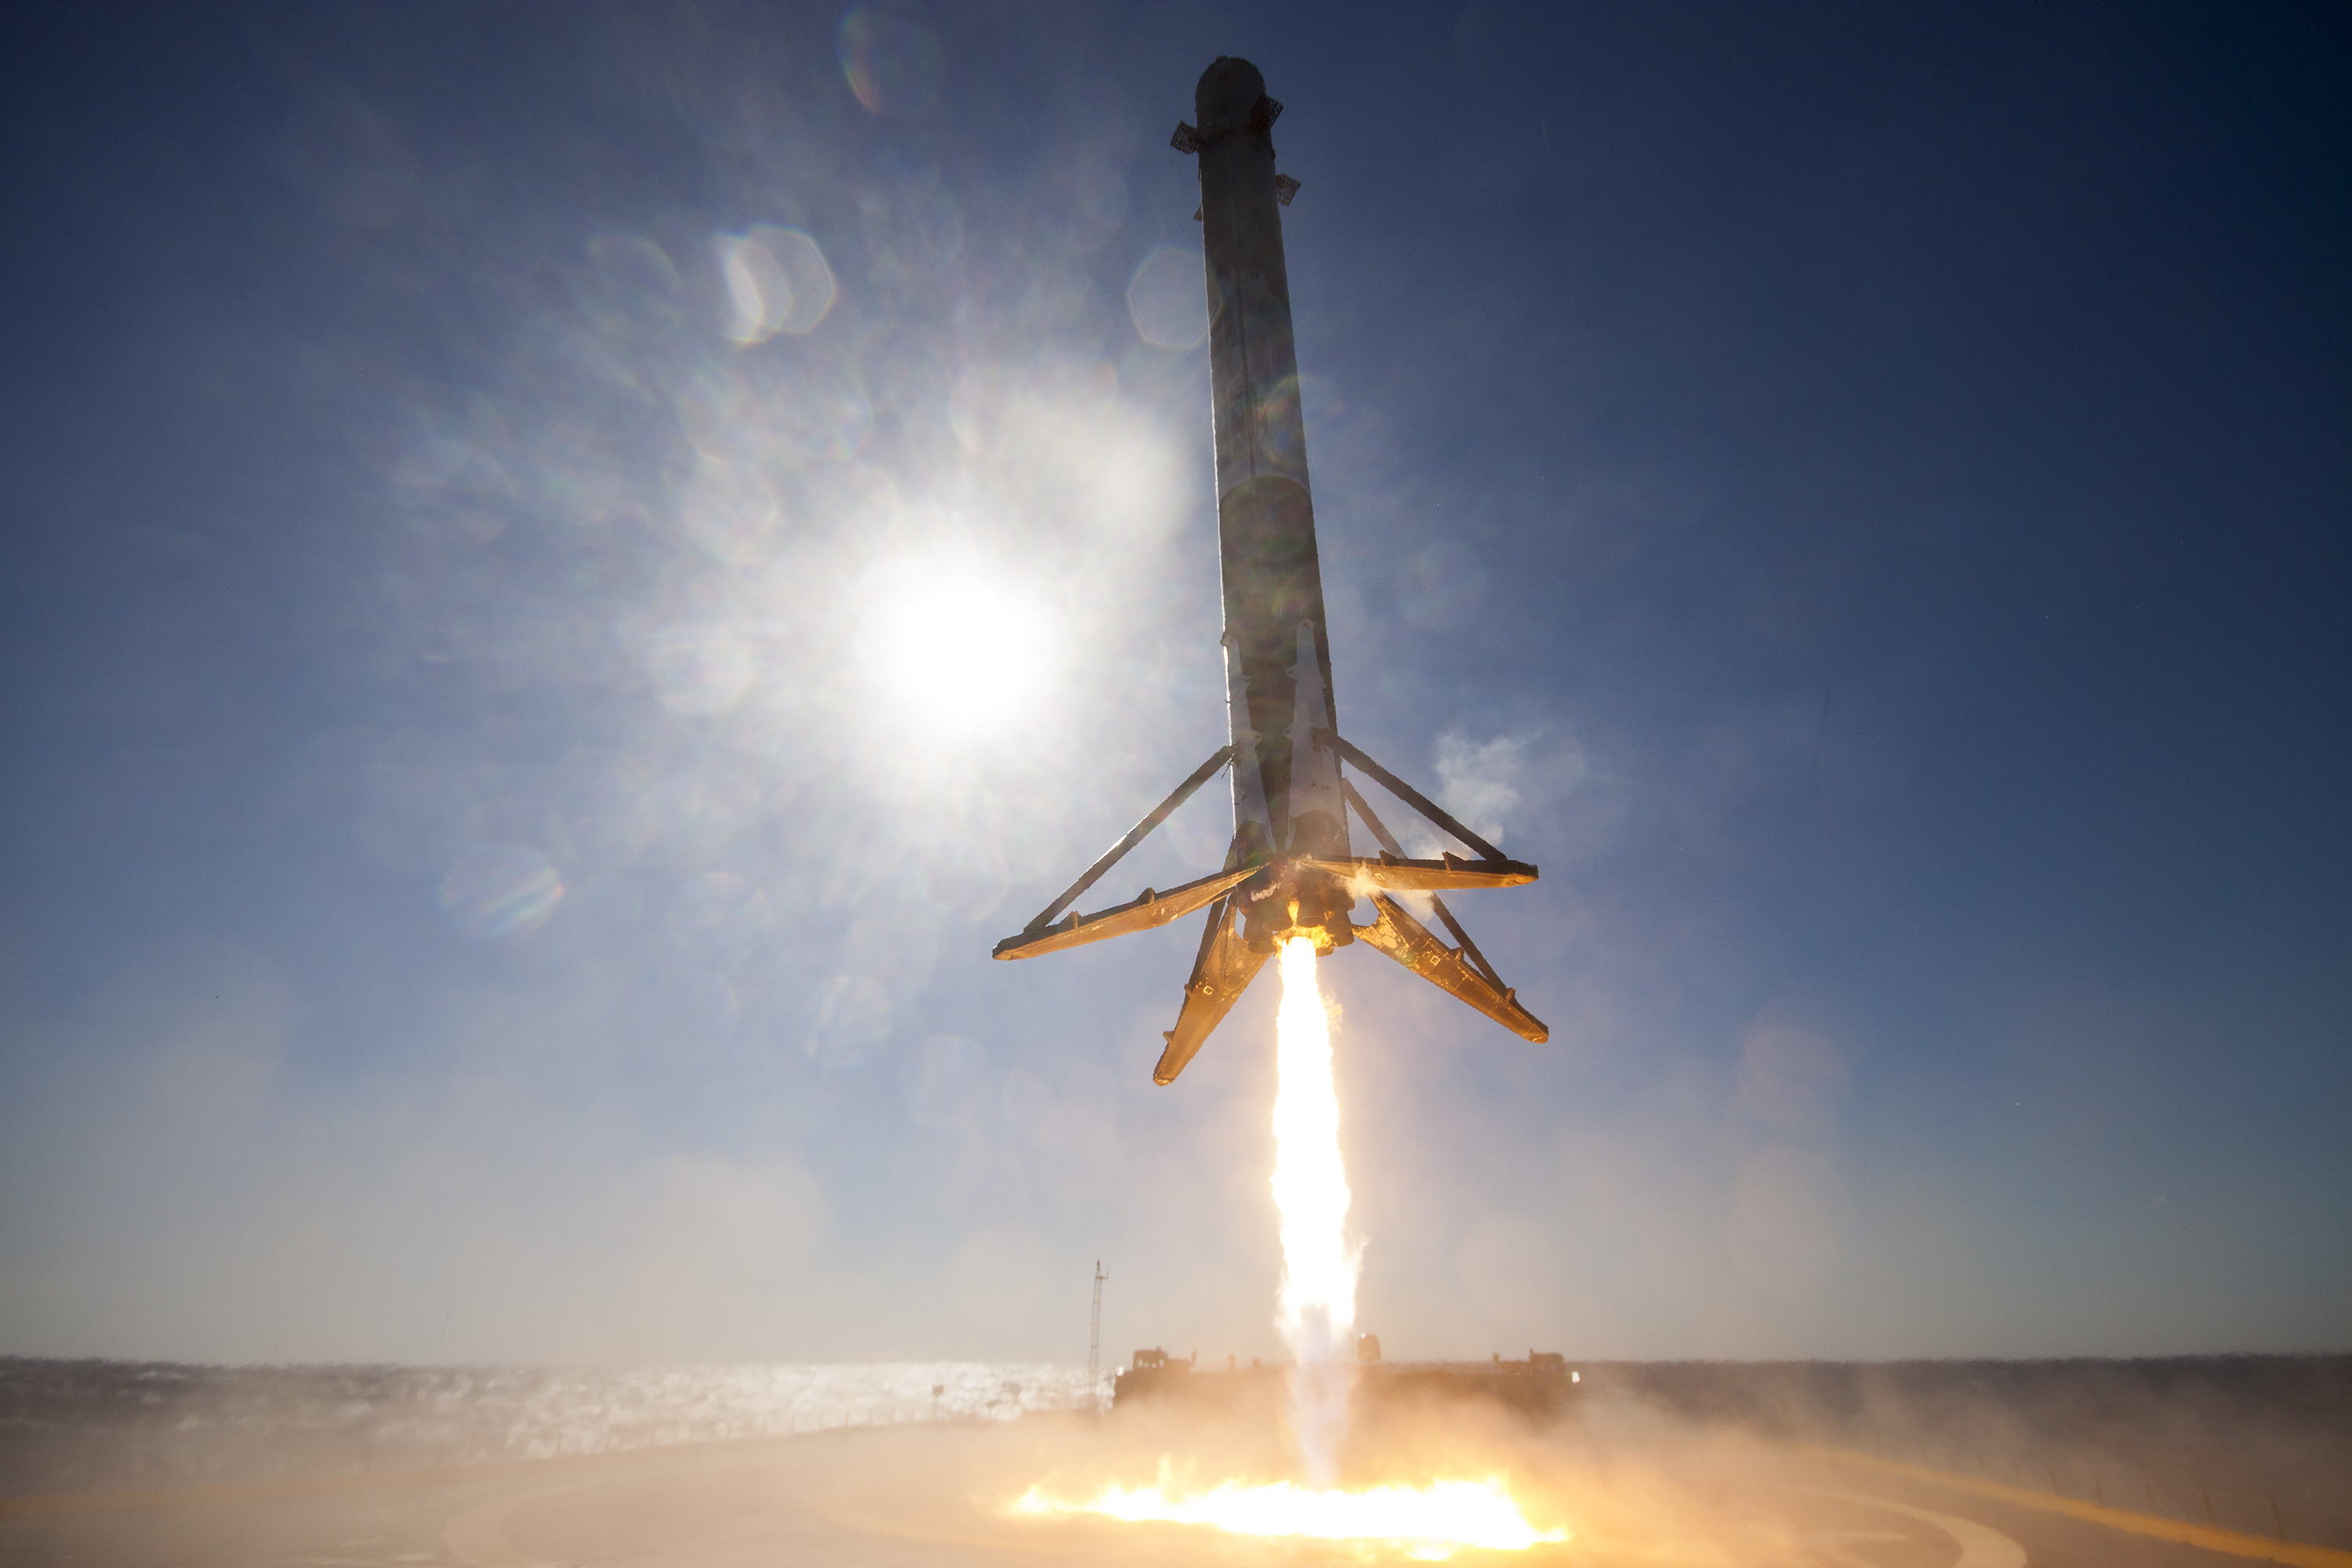 Первая ступень космического корабля Фалькон 9 (Falcon 9) садится на роботизированную баржу